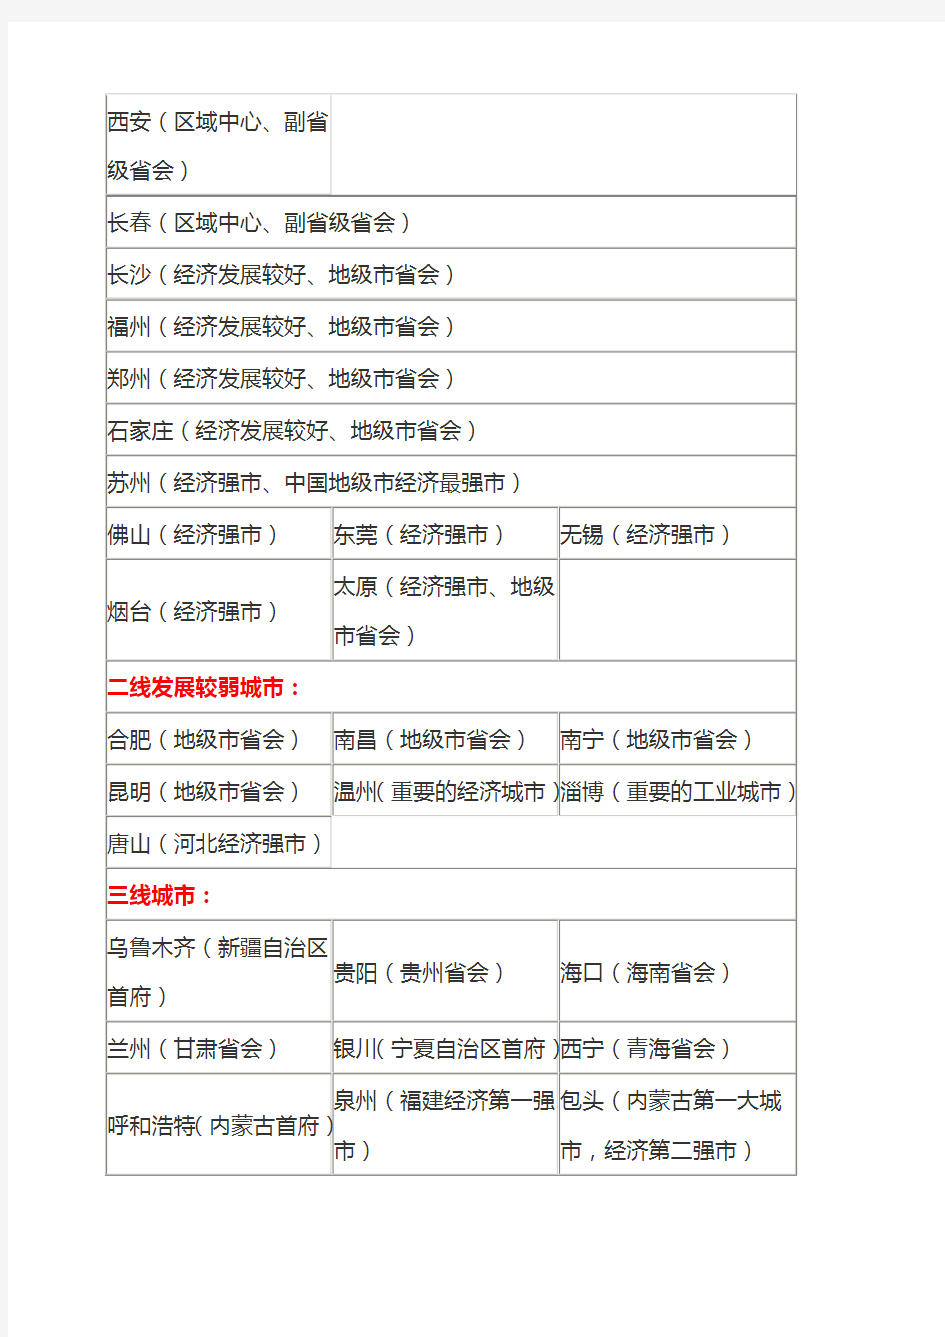 中国城市等级划分名单